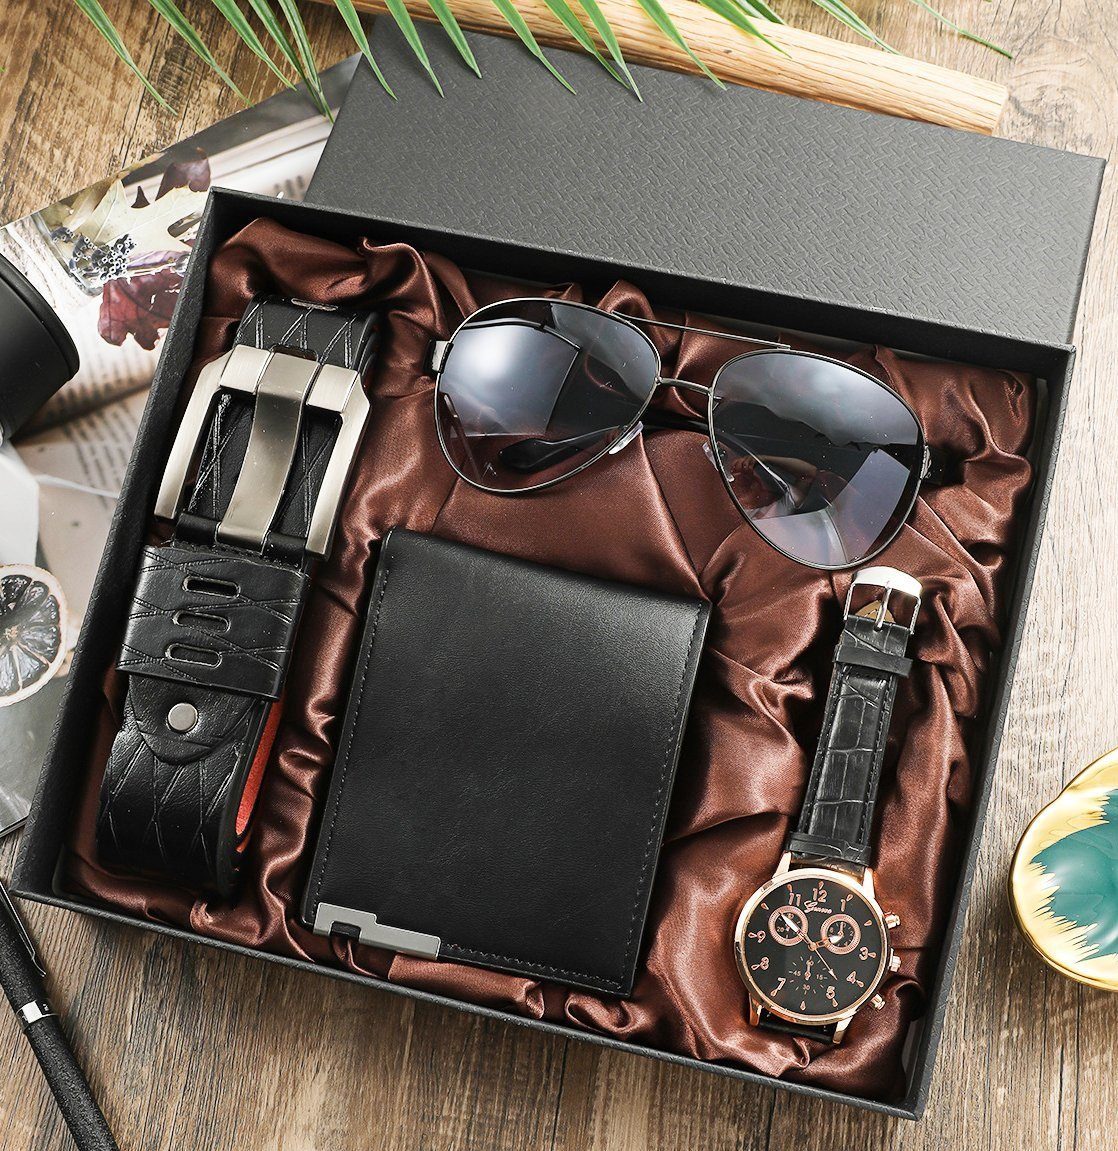 KUGI Geldbörse 4PCS Geschenk für Männer Herrenuhr Sonnenbrillen Gürtel Set, Herren Geschenkbox Sets,mit Ledergürtel Wallet Watch Gläsern schwarz